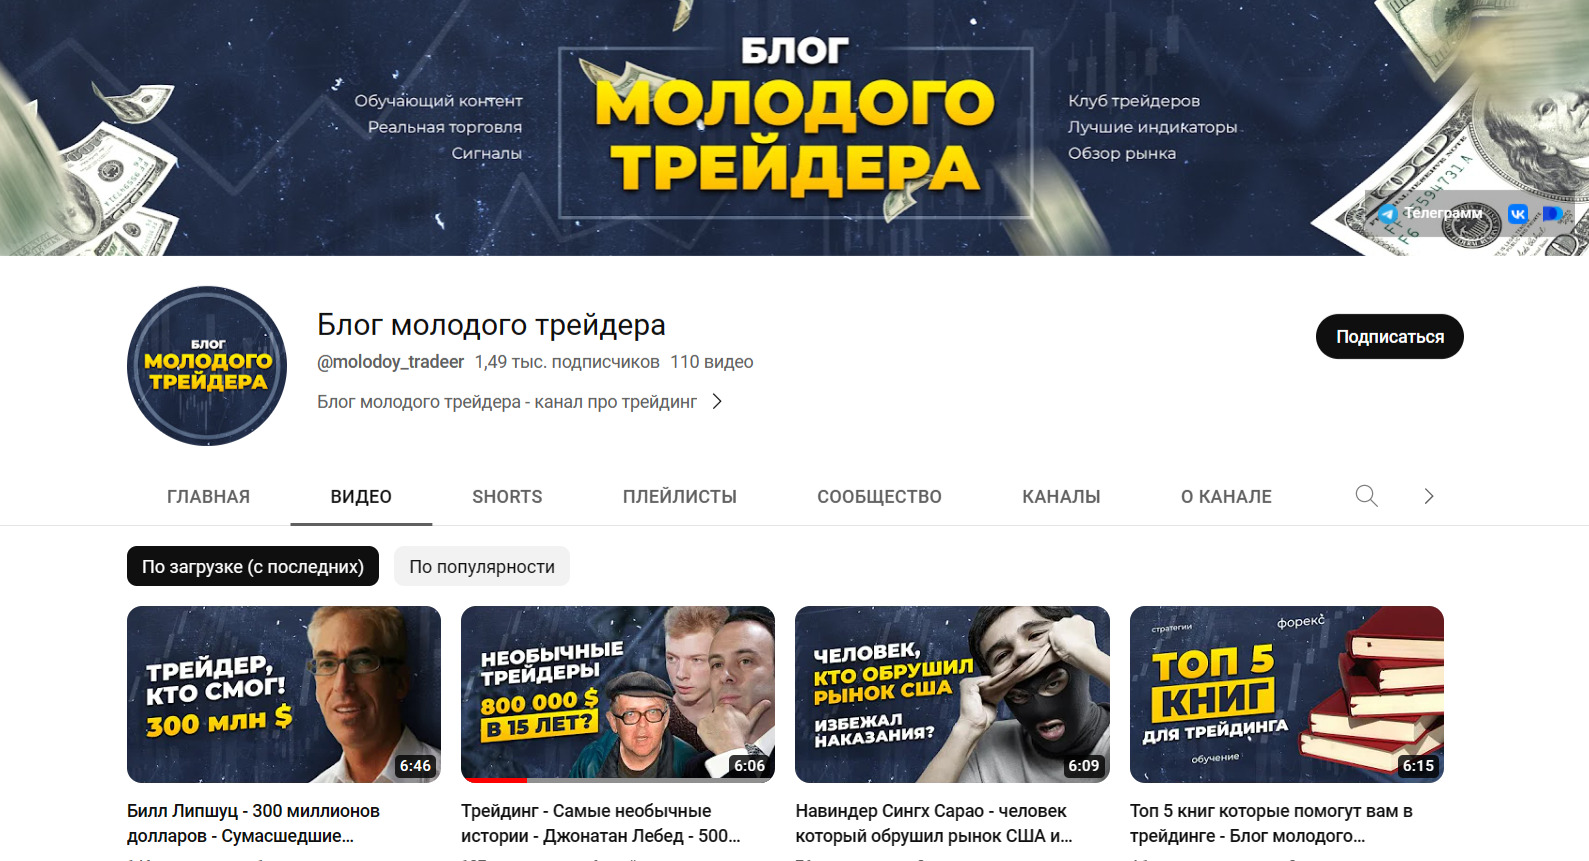 Youtube канал Дмитрия Иванова